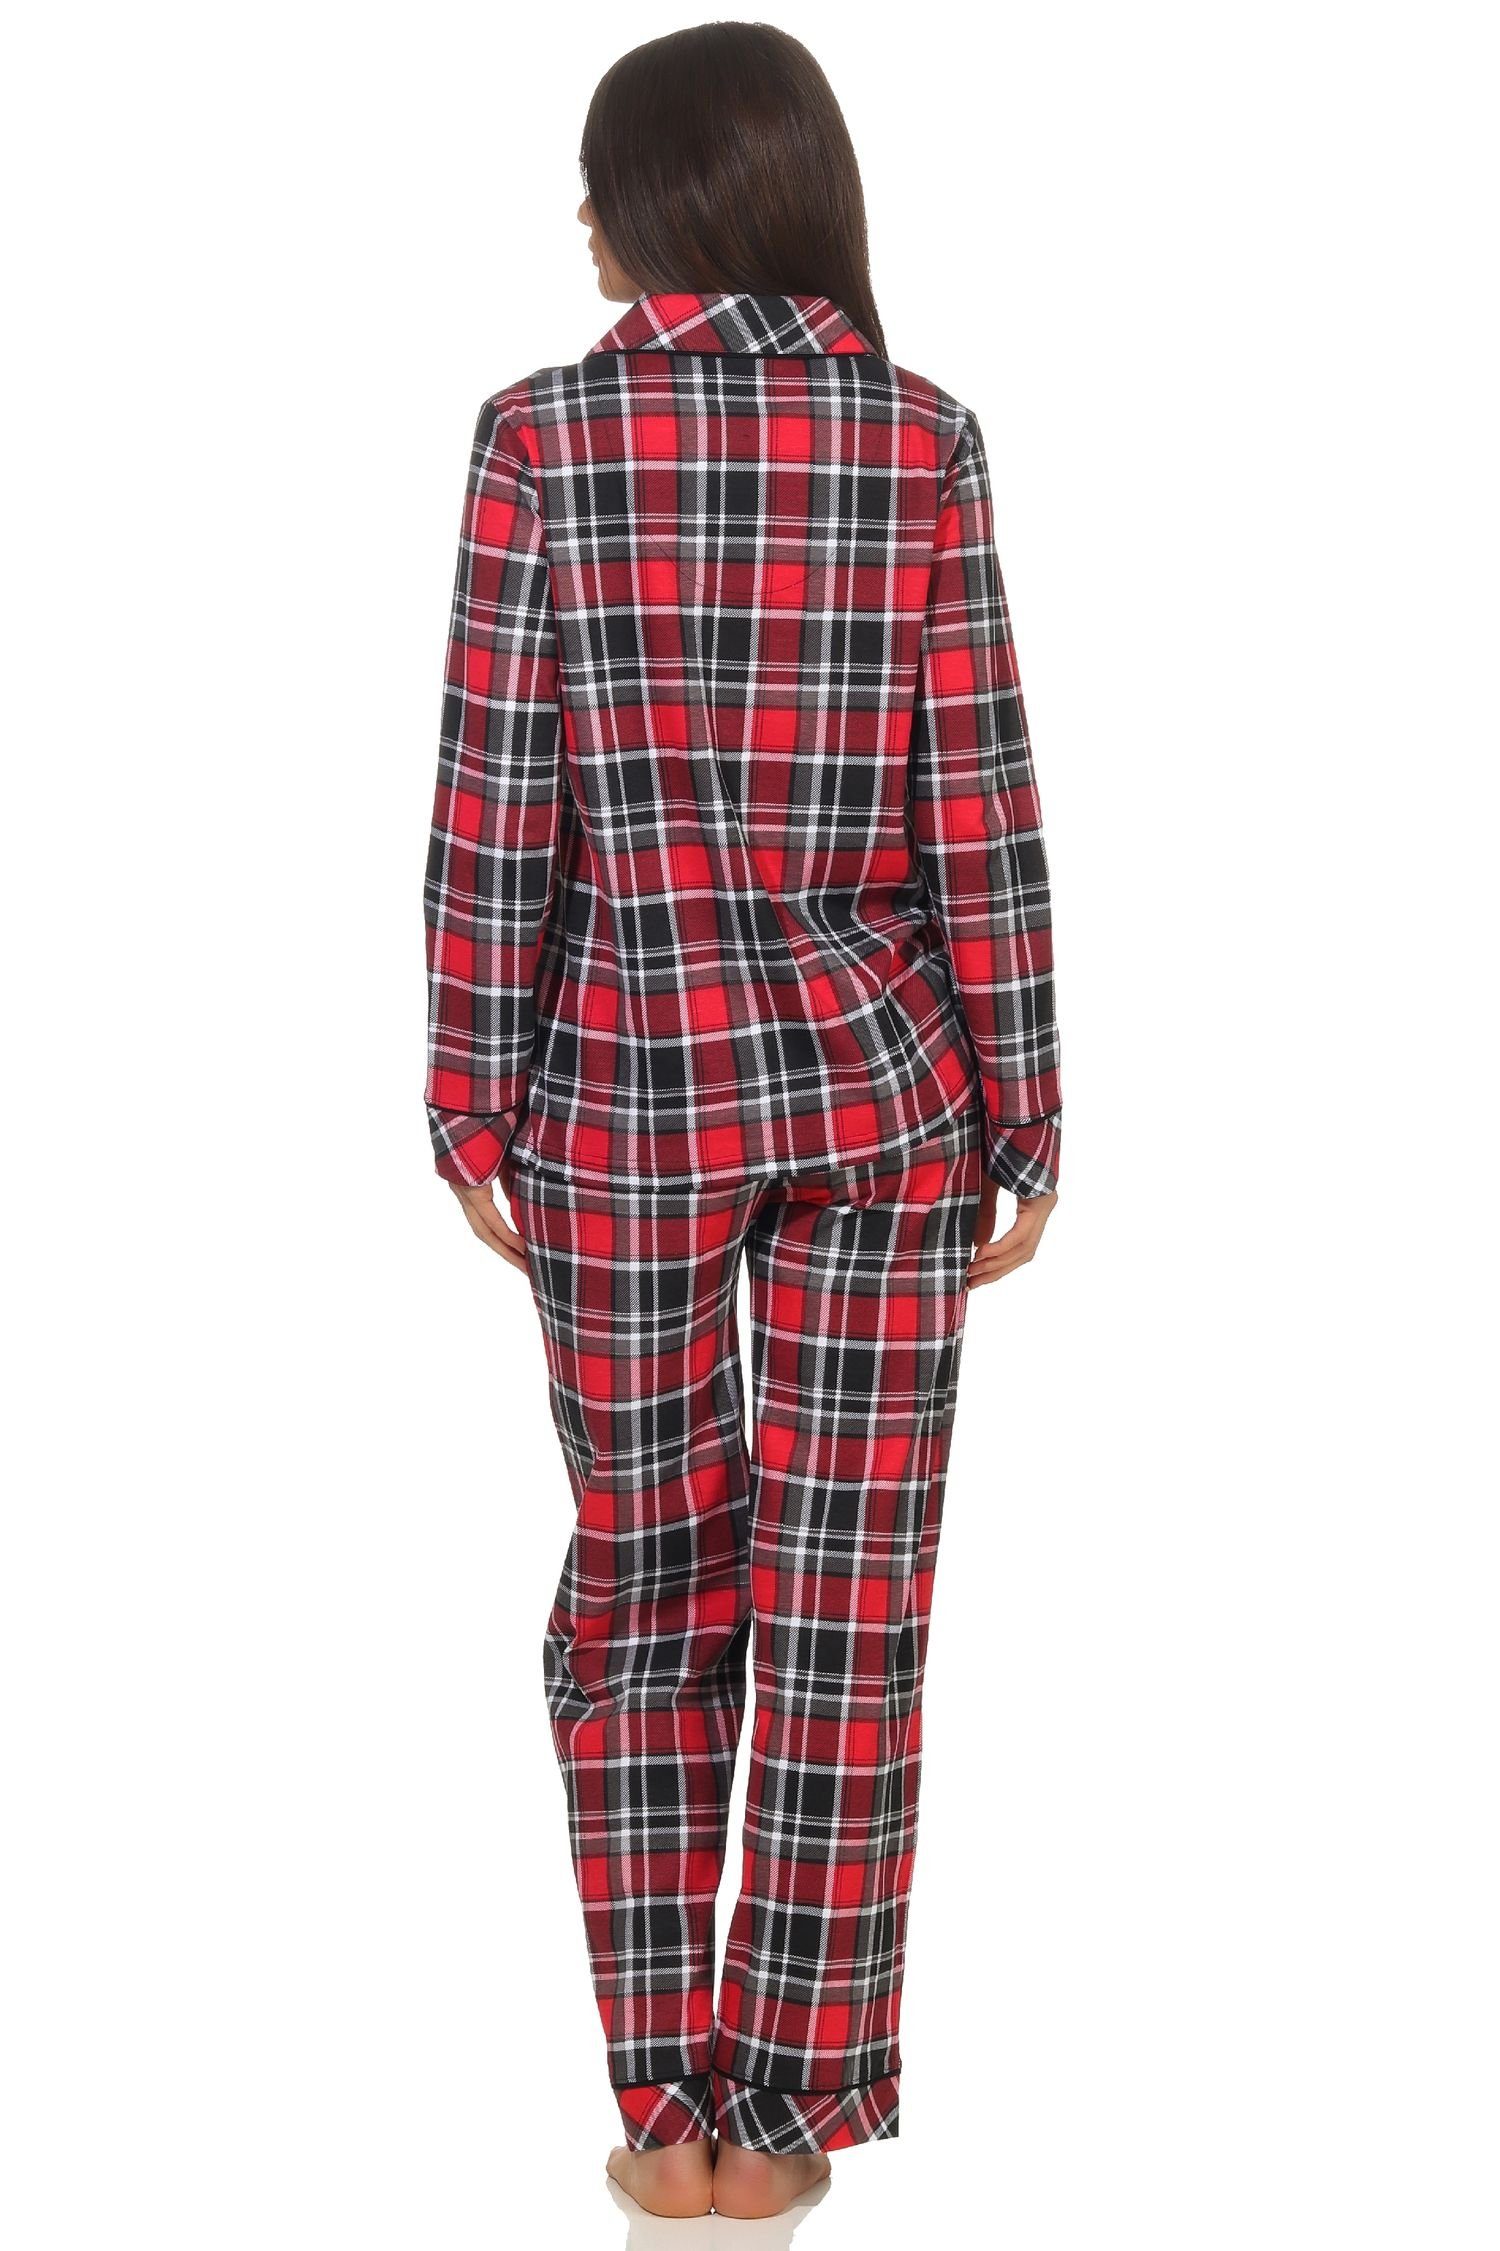 Jersey zum Pyjama Normann durchknöpfen in Qualität Damen in Pyjama Karo Single Optik